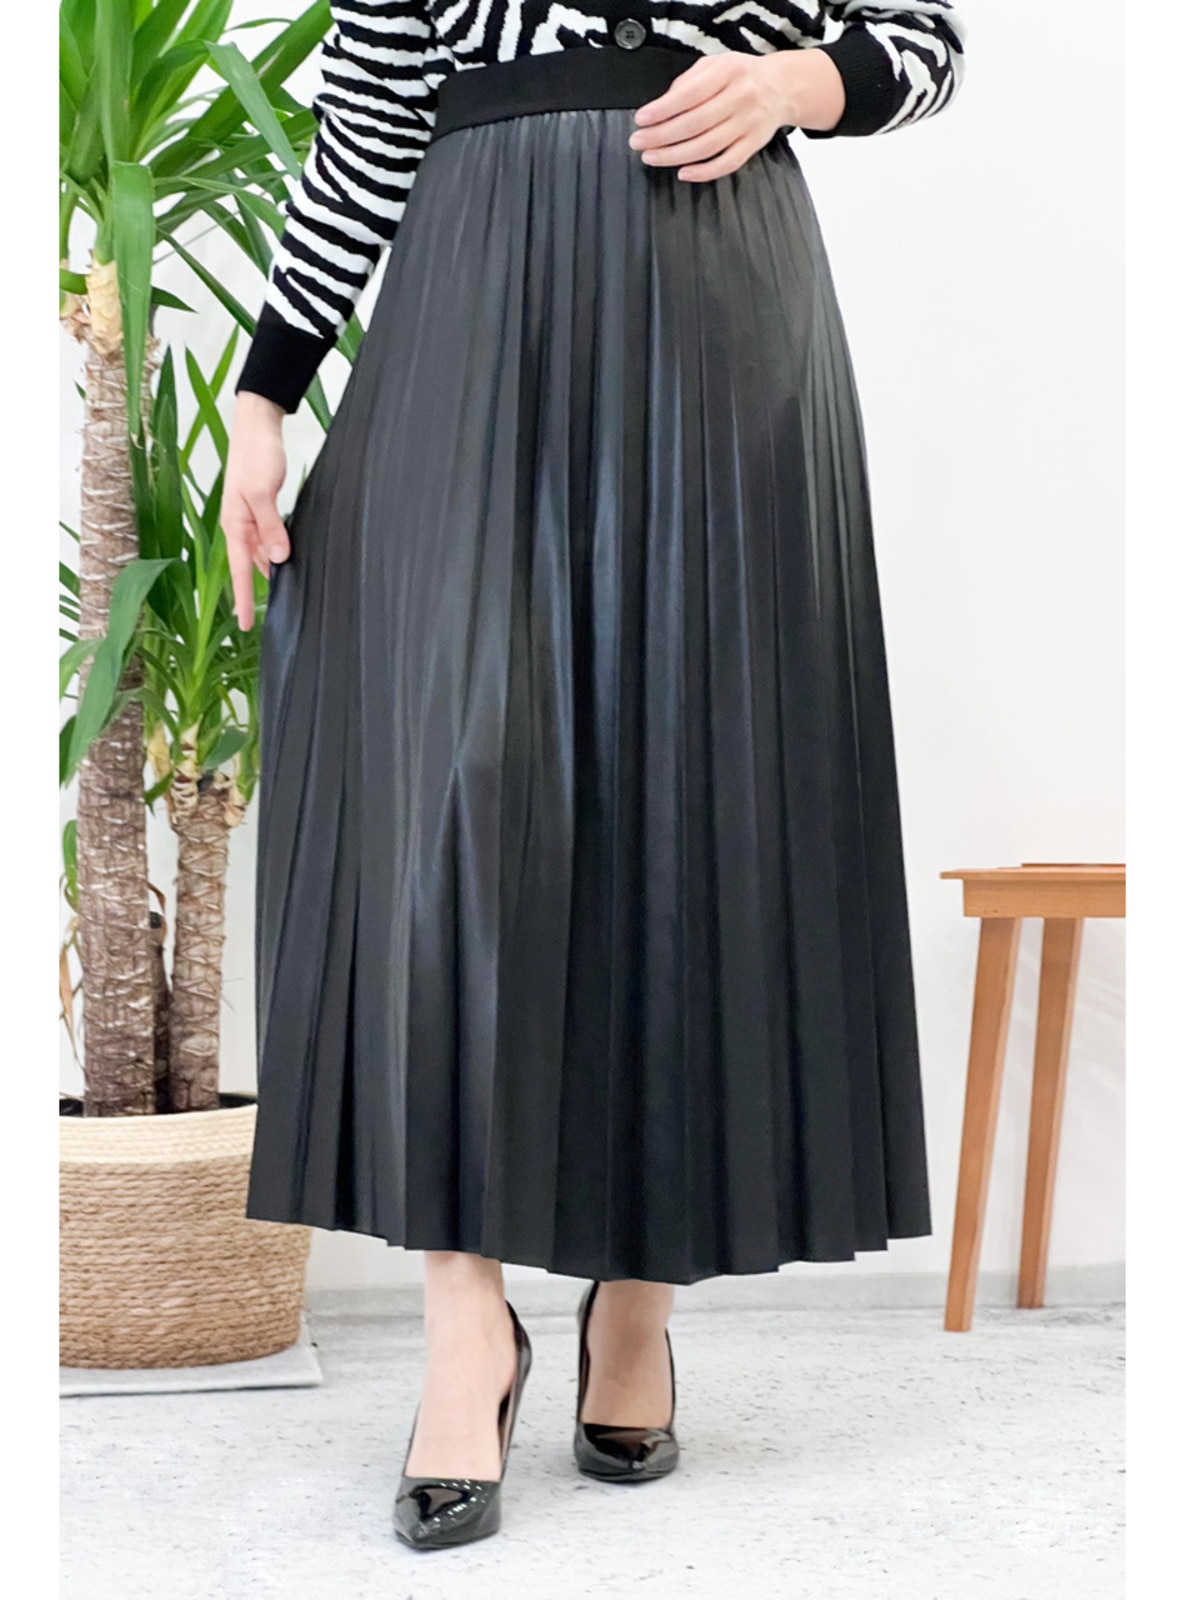  Black Pleated Skirt